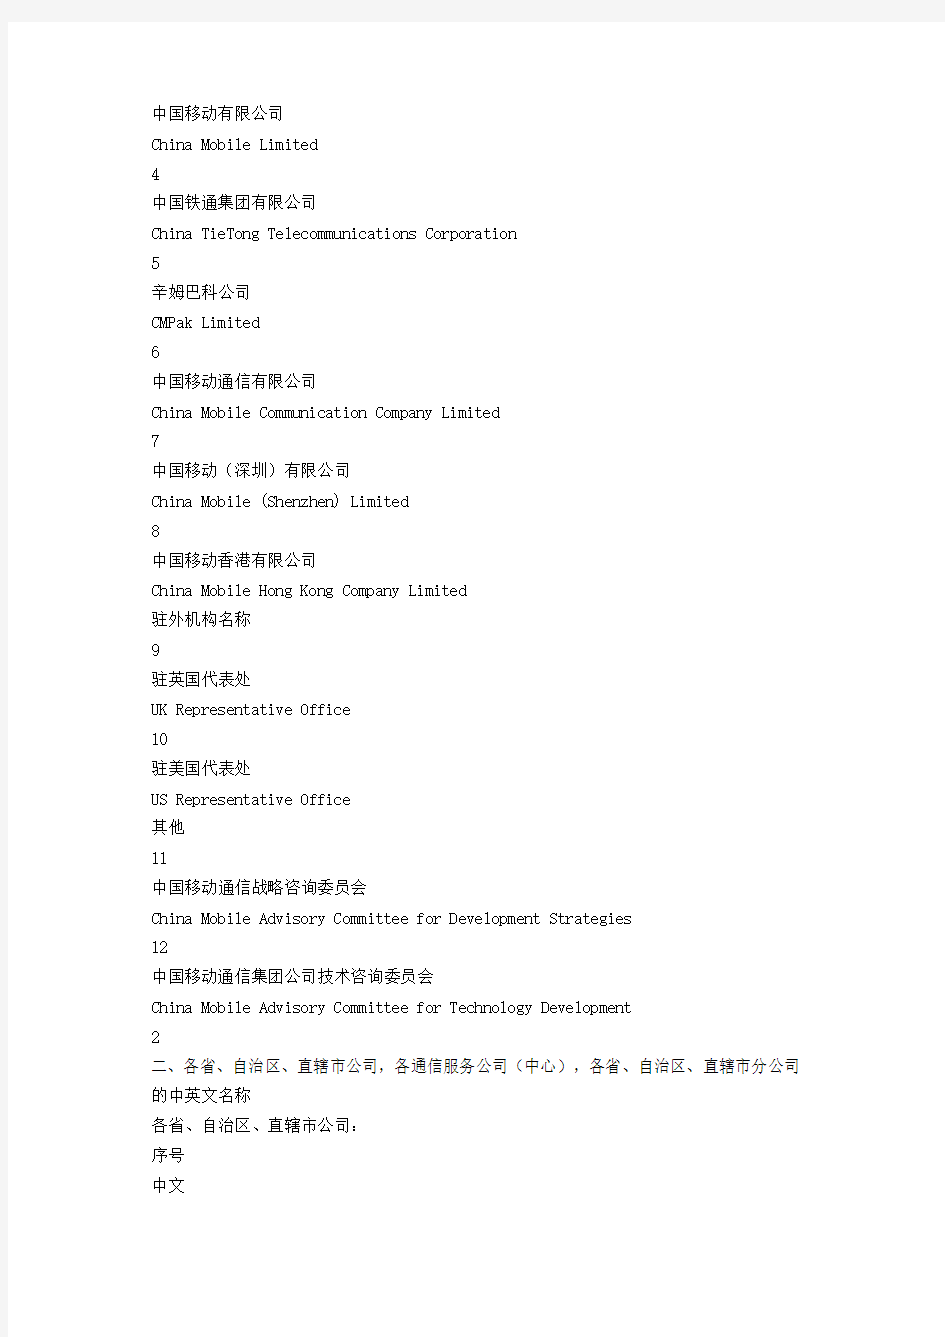 中国移动通信集团公司中、英文名称对照表